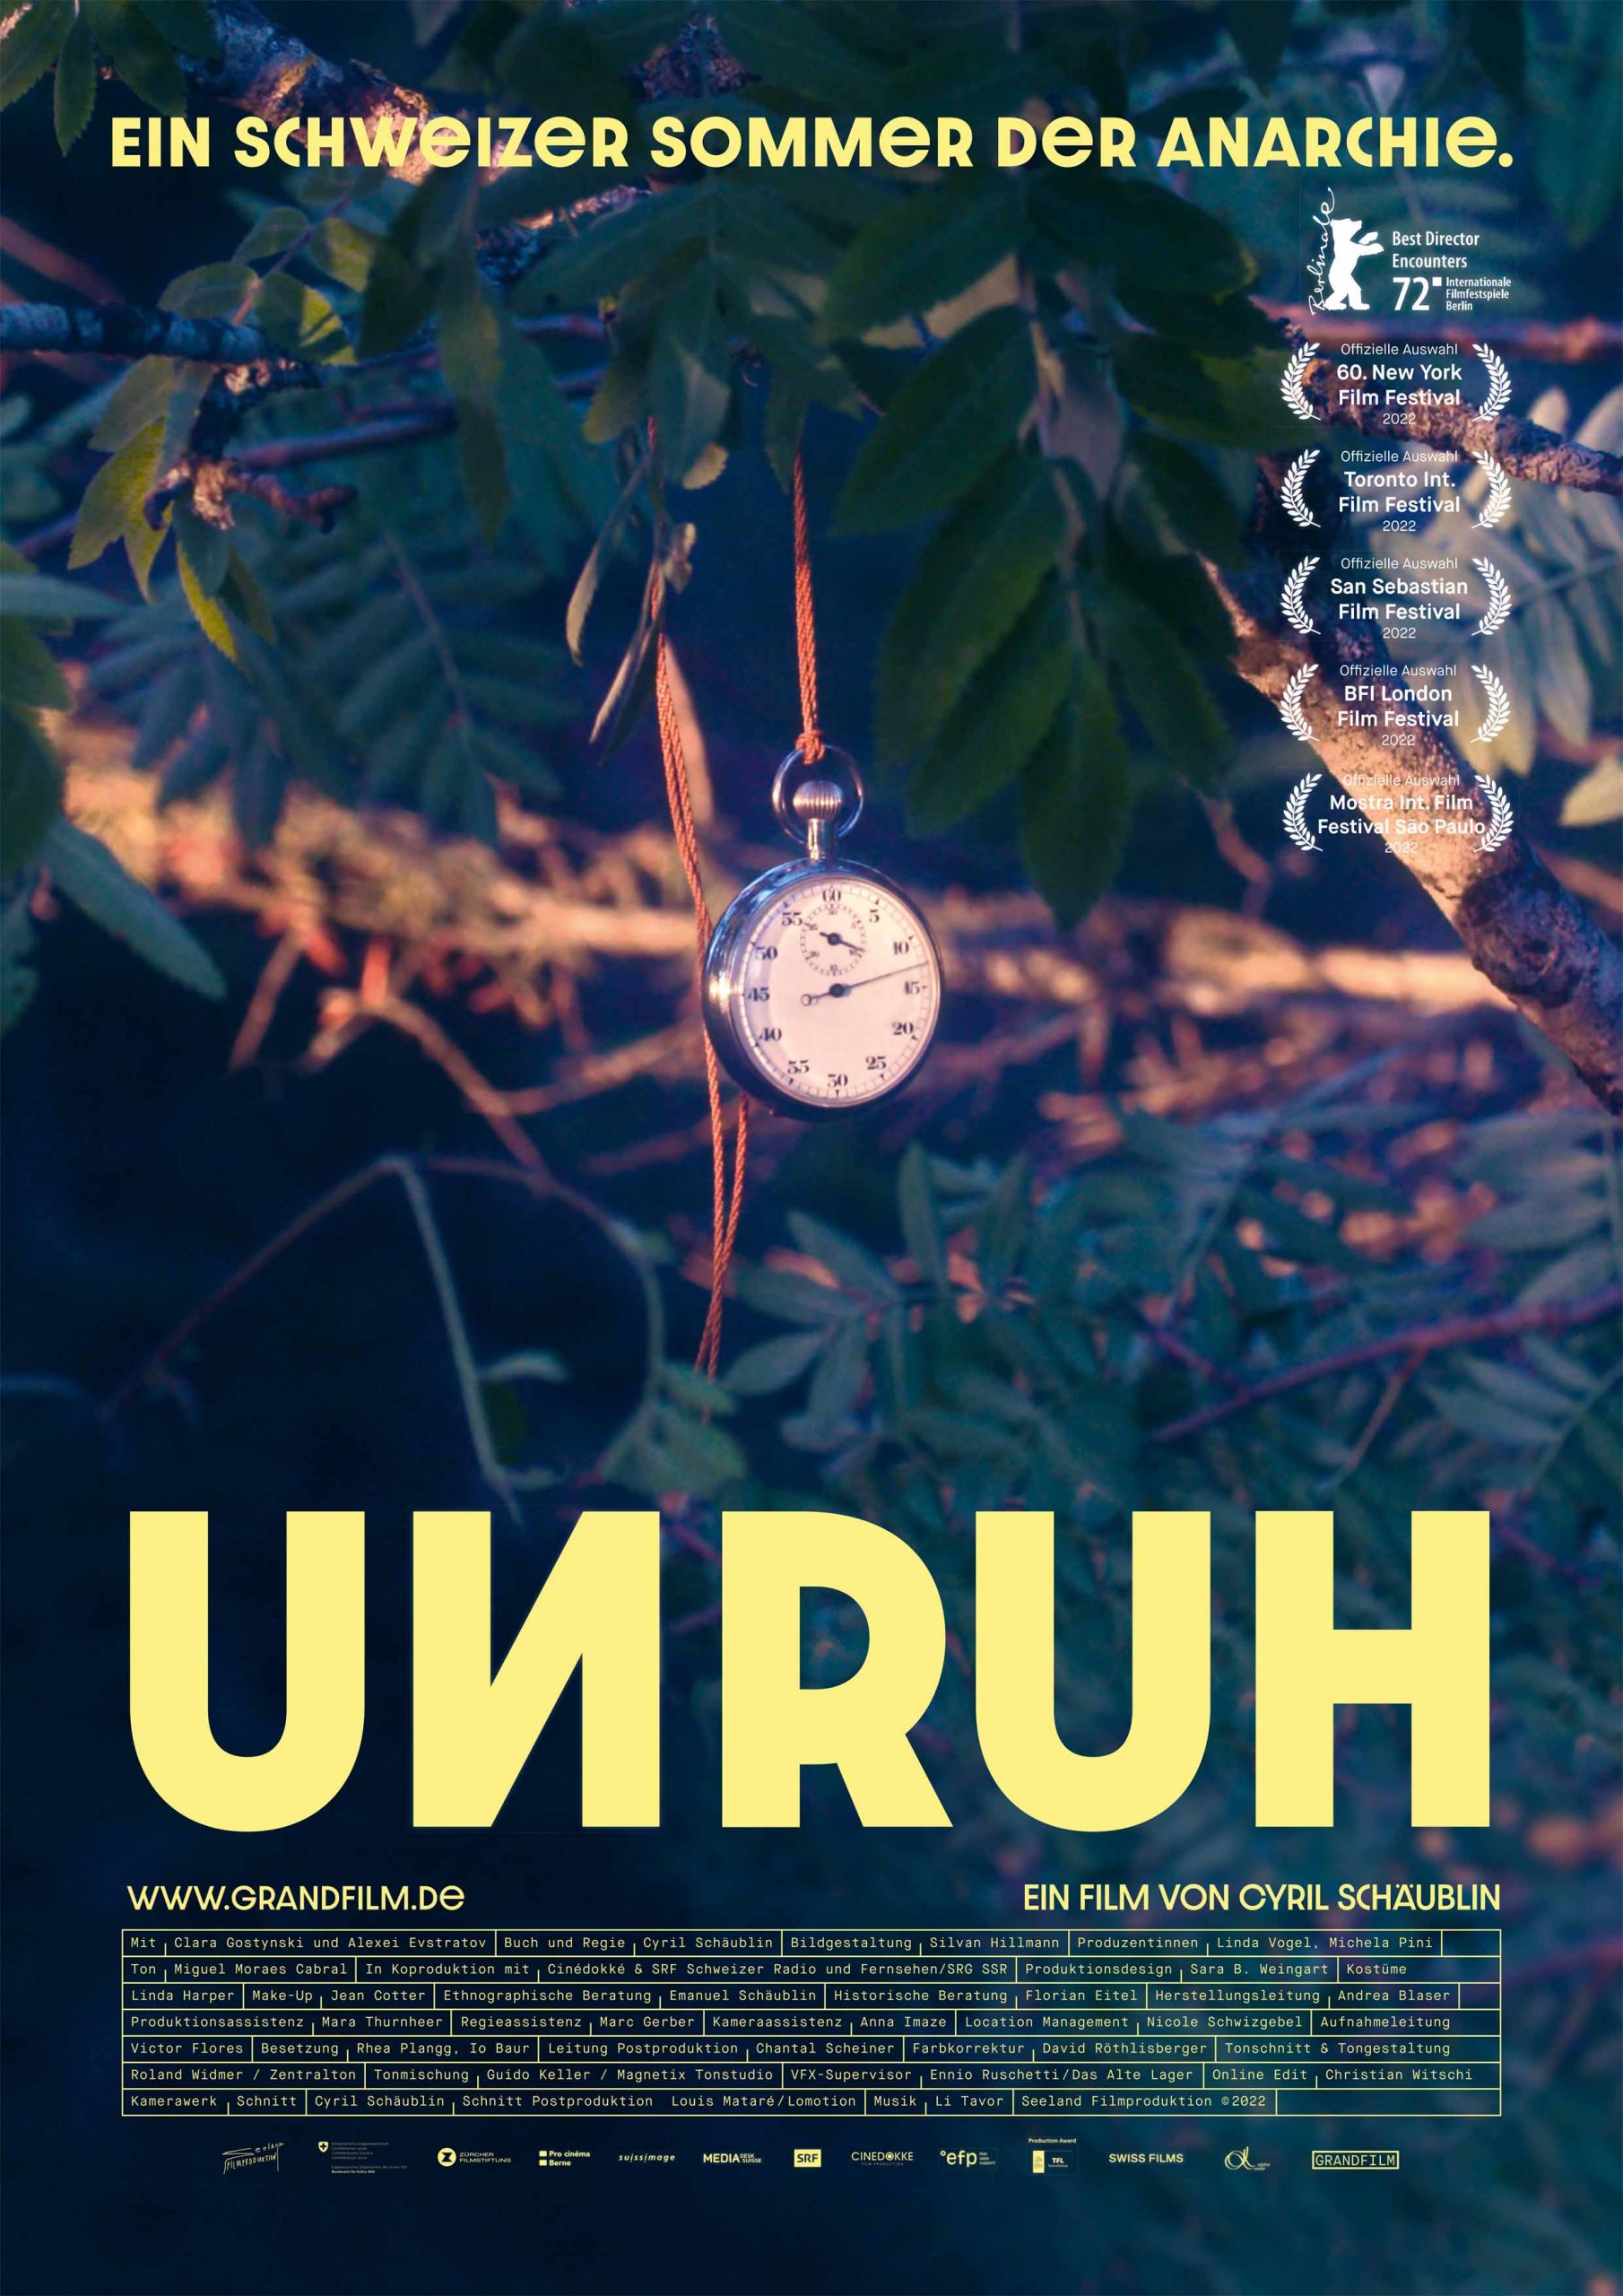 Unruh - Ab 05. Januar im Kino, ein Film von Cyril Schäublin, Artwork